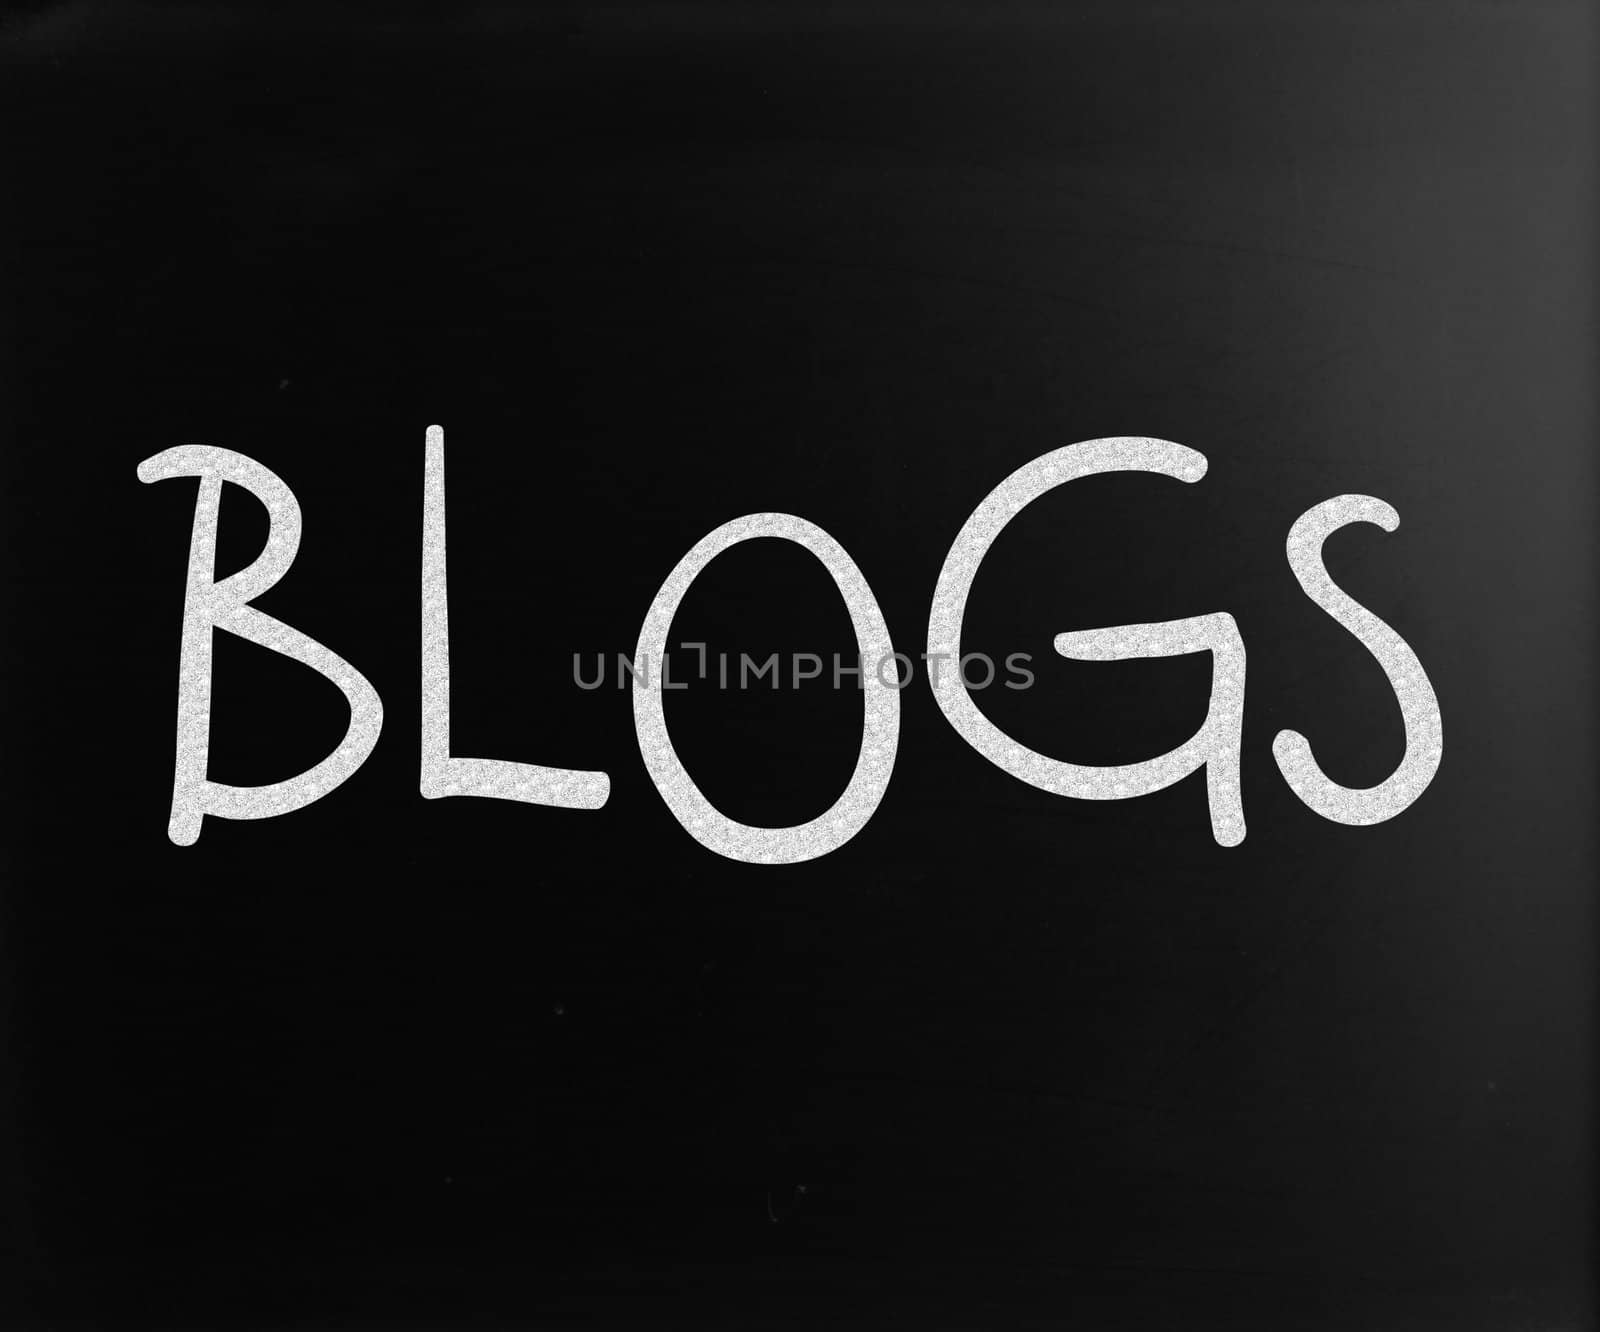 "Blogs" handwritten with white chalk on a blackboard